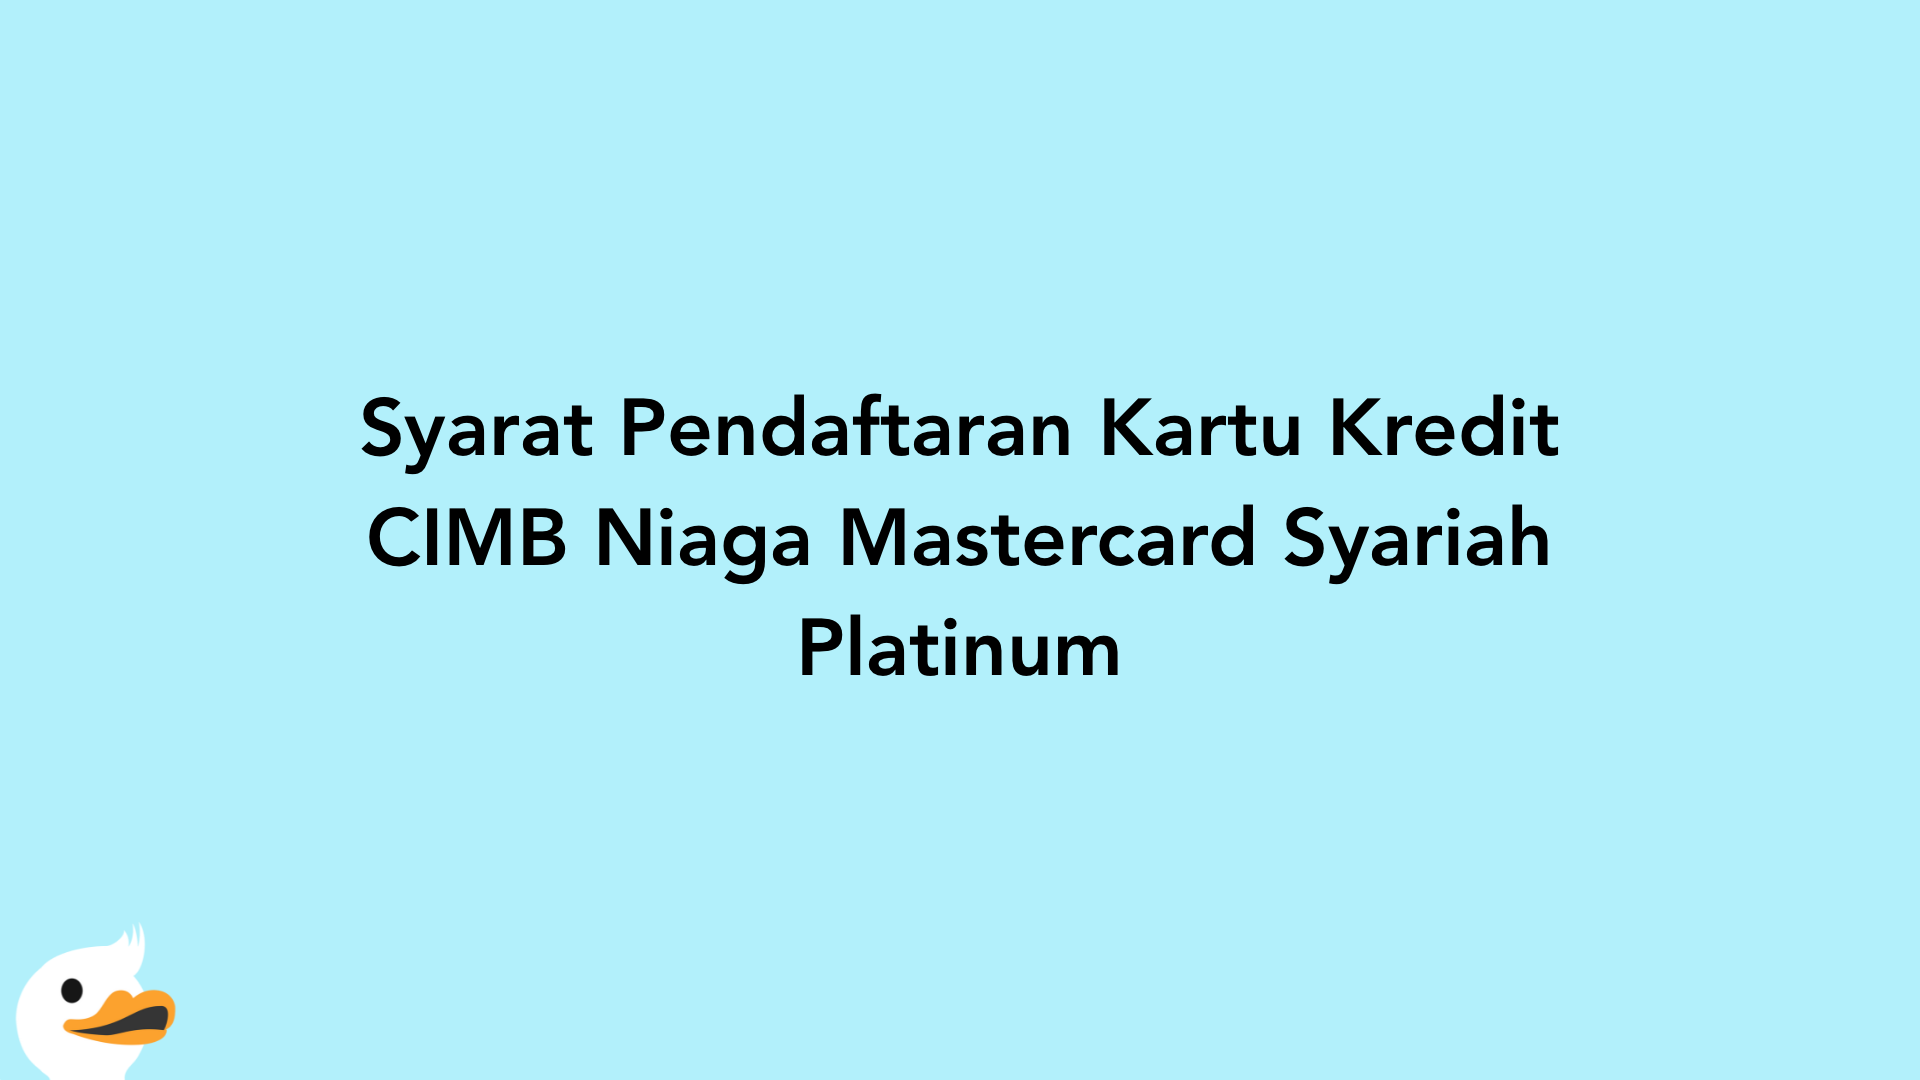 Syarat Pendaftaran Kartu Kredit CIMB Niaga Mastercard Syariah Platinum